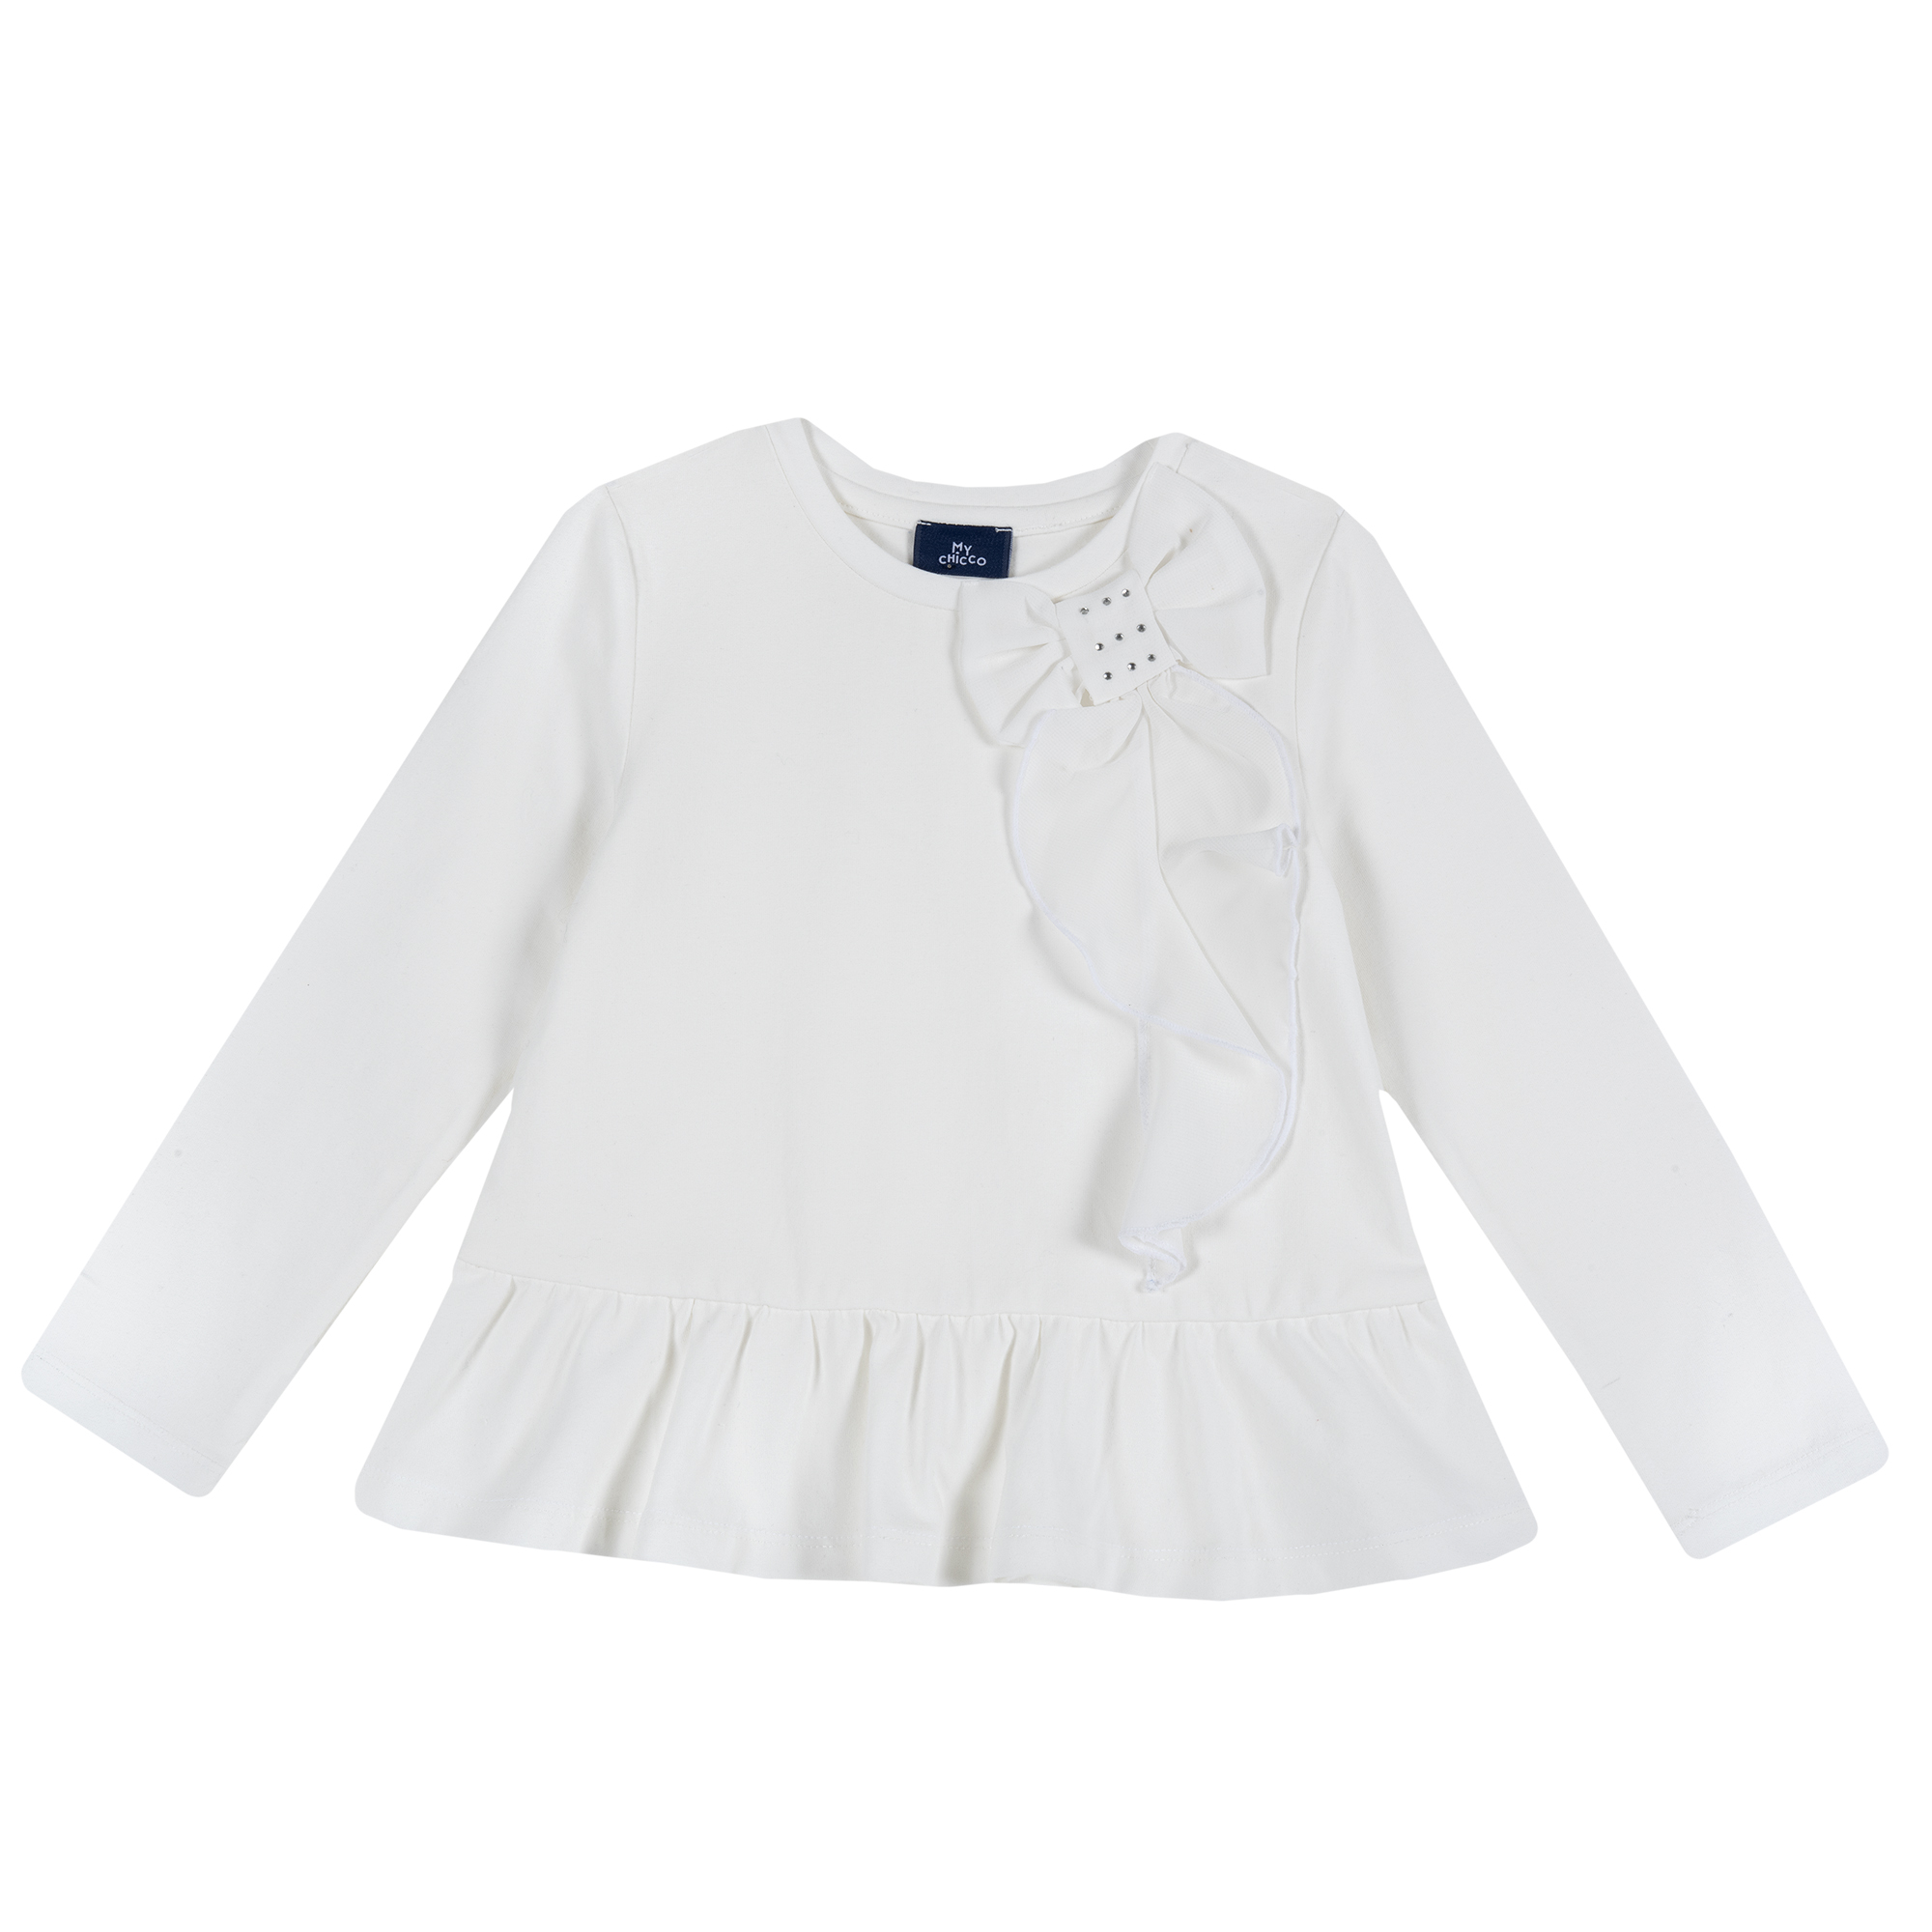 Bluza copii Chicco, aplicatii decorative, alb, 64840 CHICCO